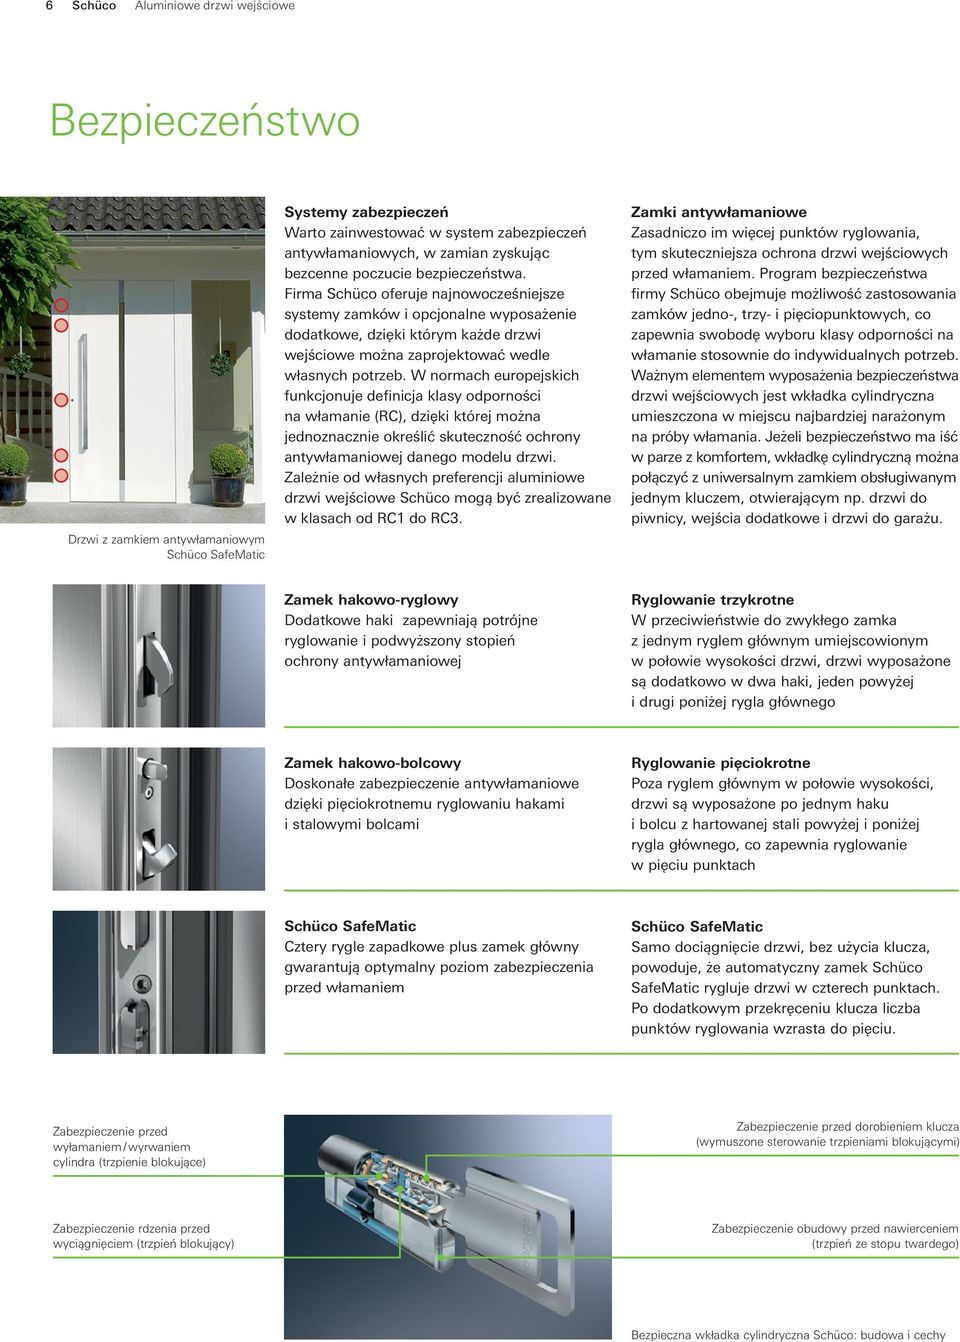 Firma Schüco oferuje najnowocześniejsze systemy zamków i opcjonalne wyposażenie dodatkowe, dzięki którym każde drzwi wejściowe można zaprojektować wedle własnych potrzeb.